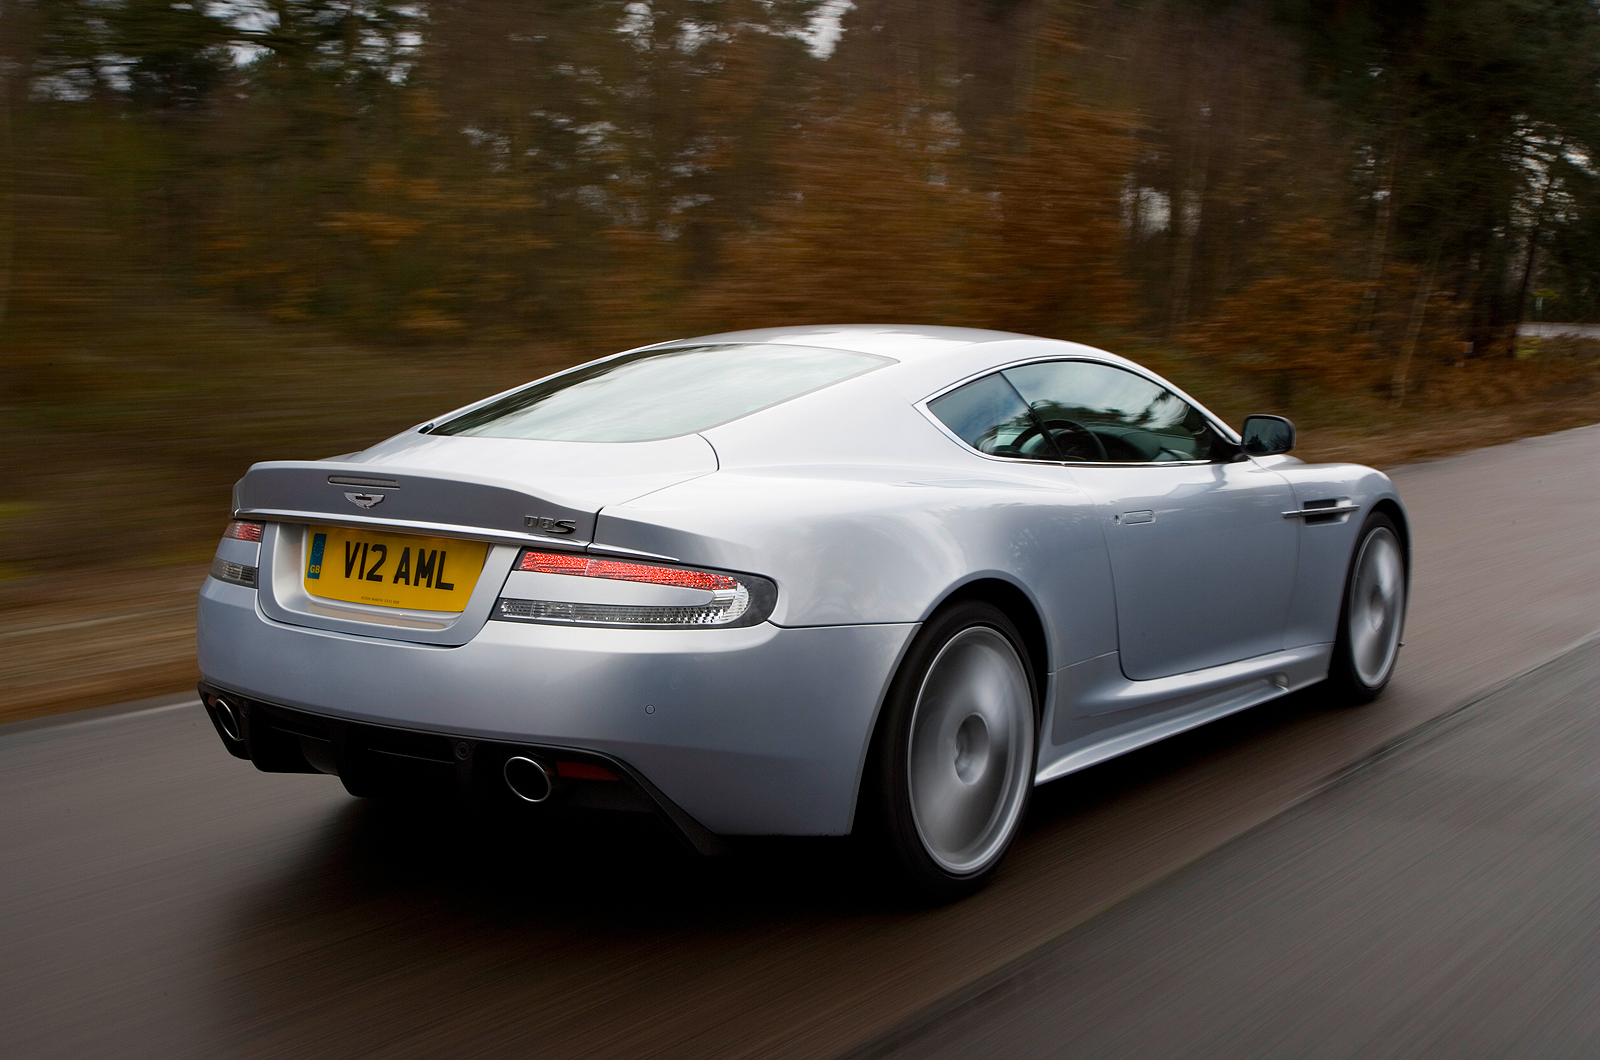 Aston Martin DBS rear